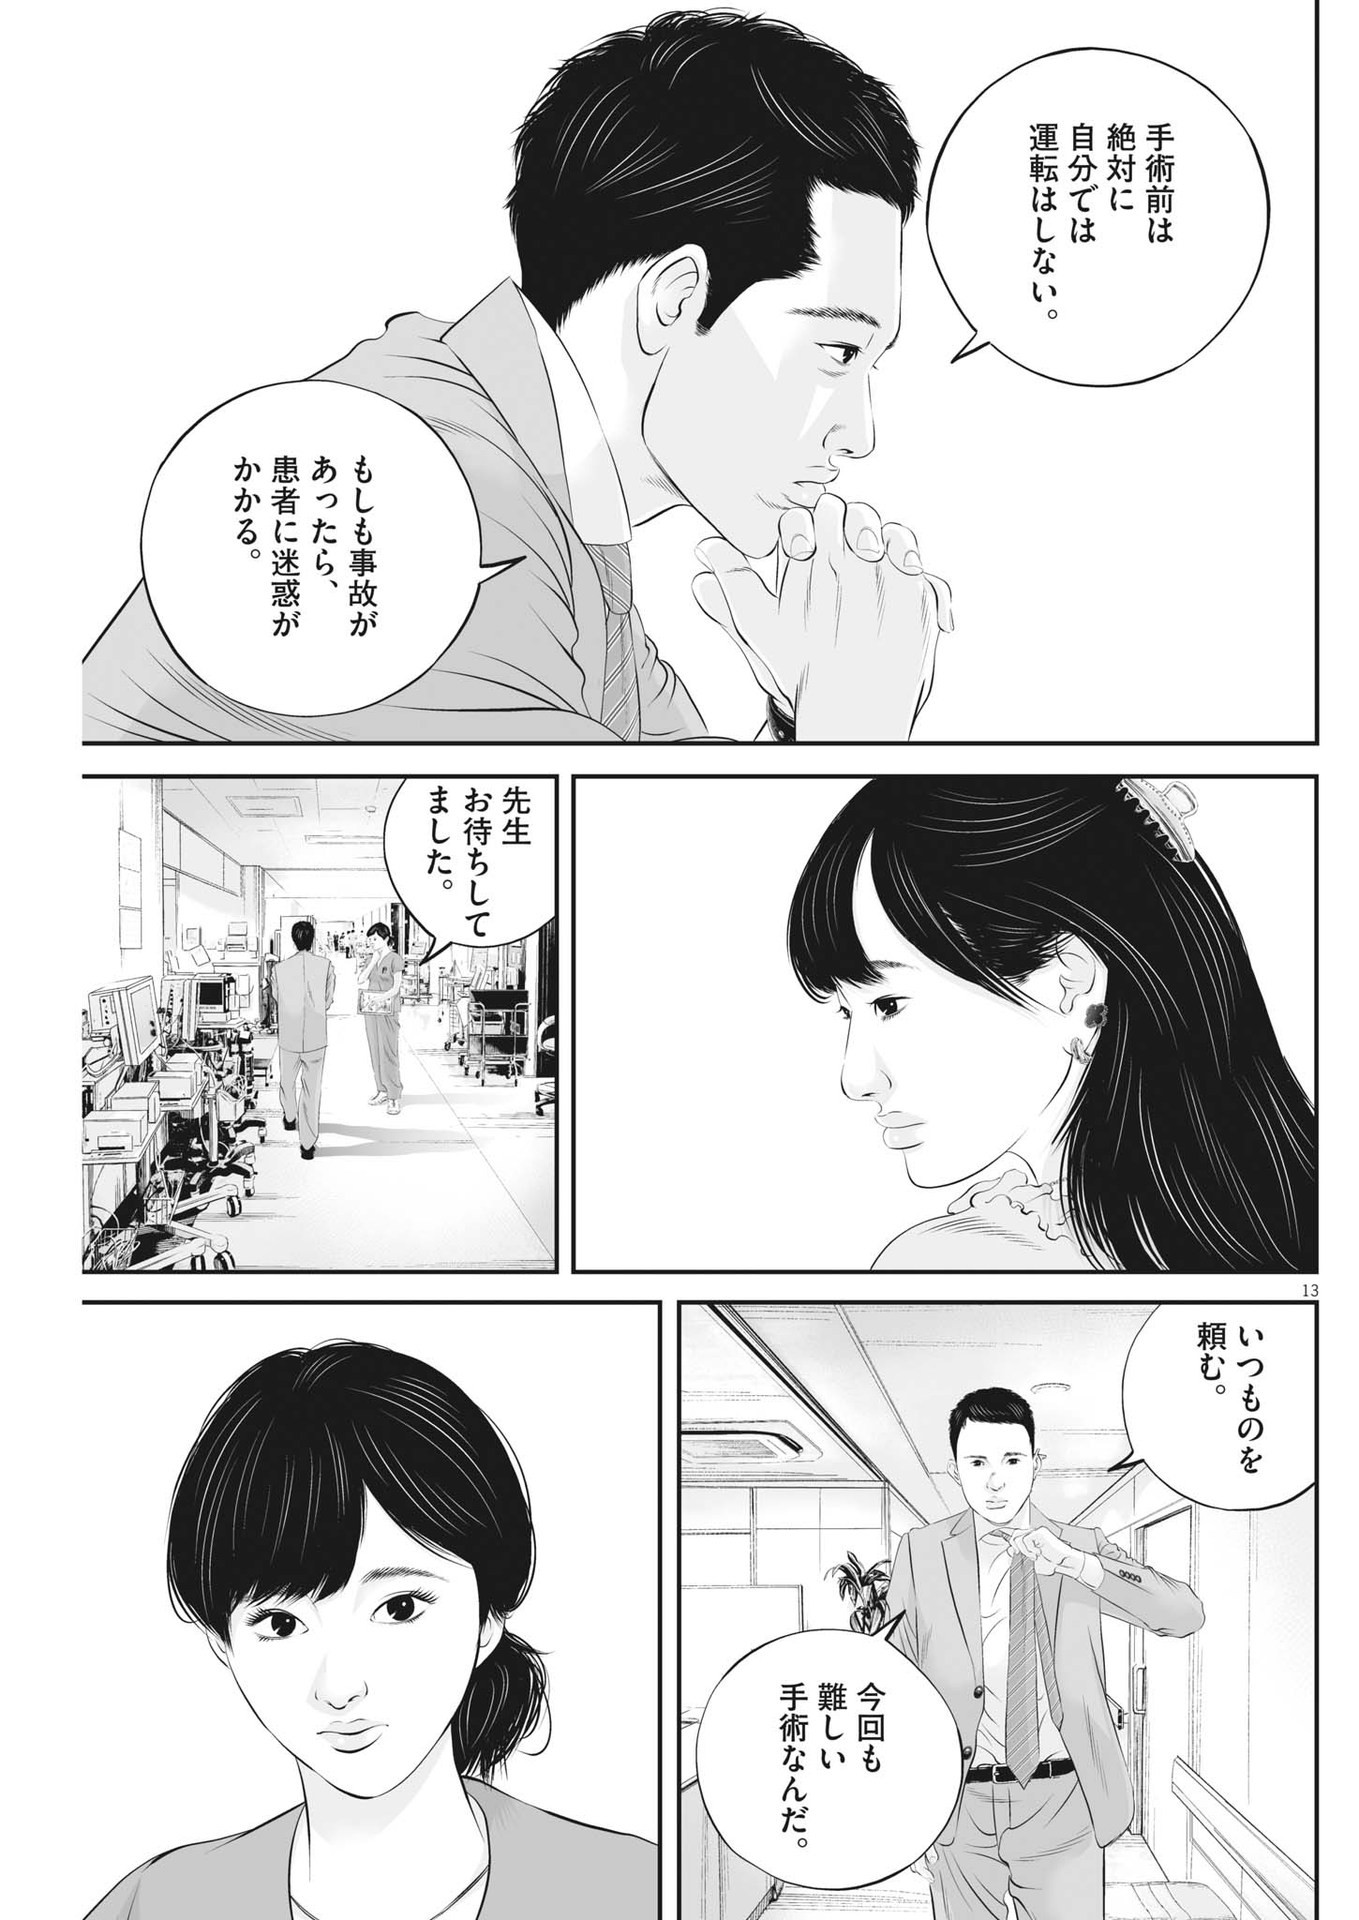 Kujou no Taizai - Chapter 96 - Page 13